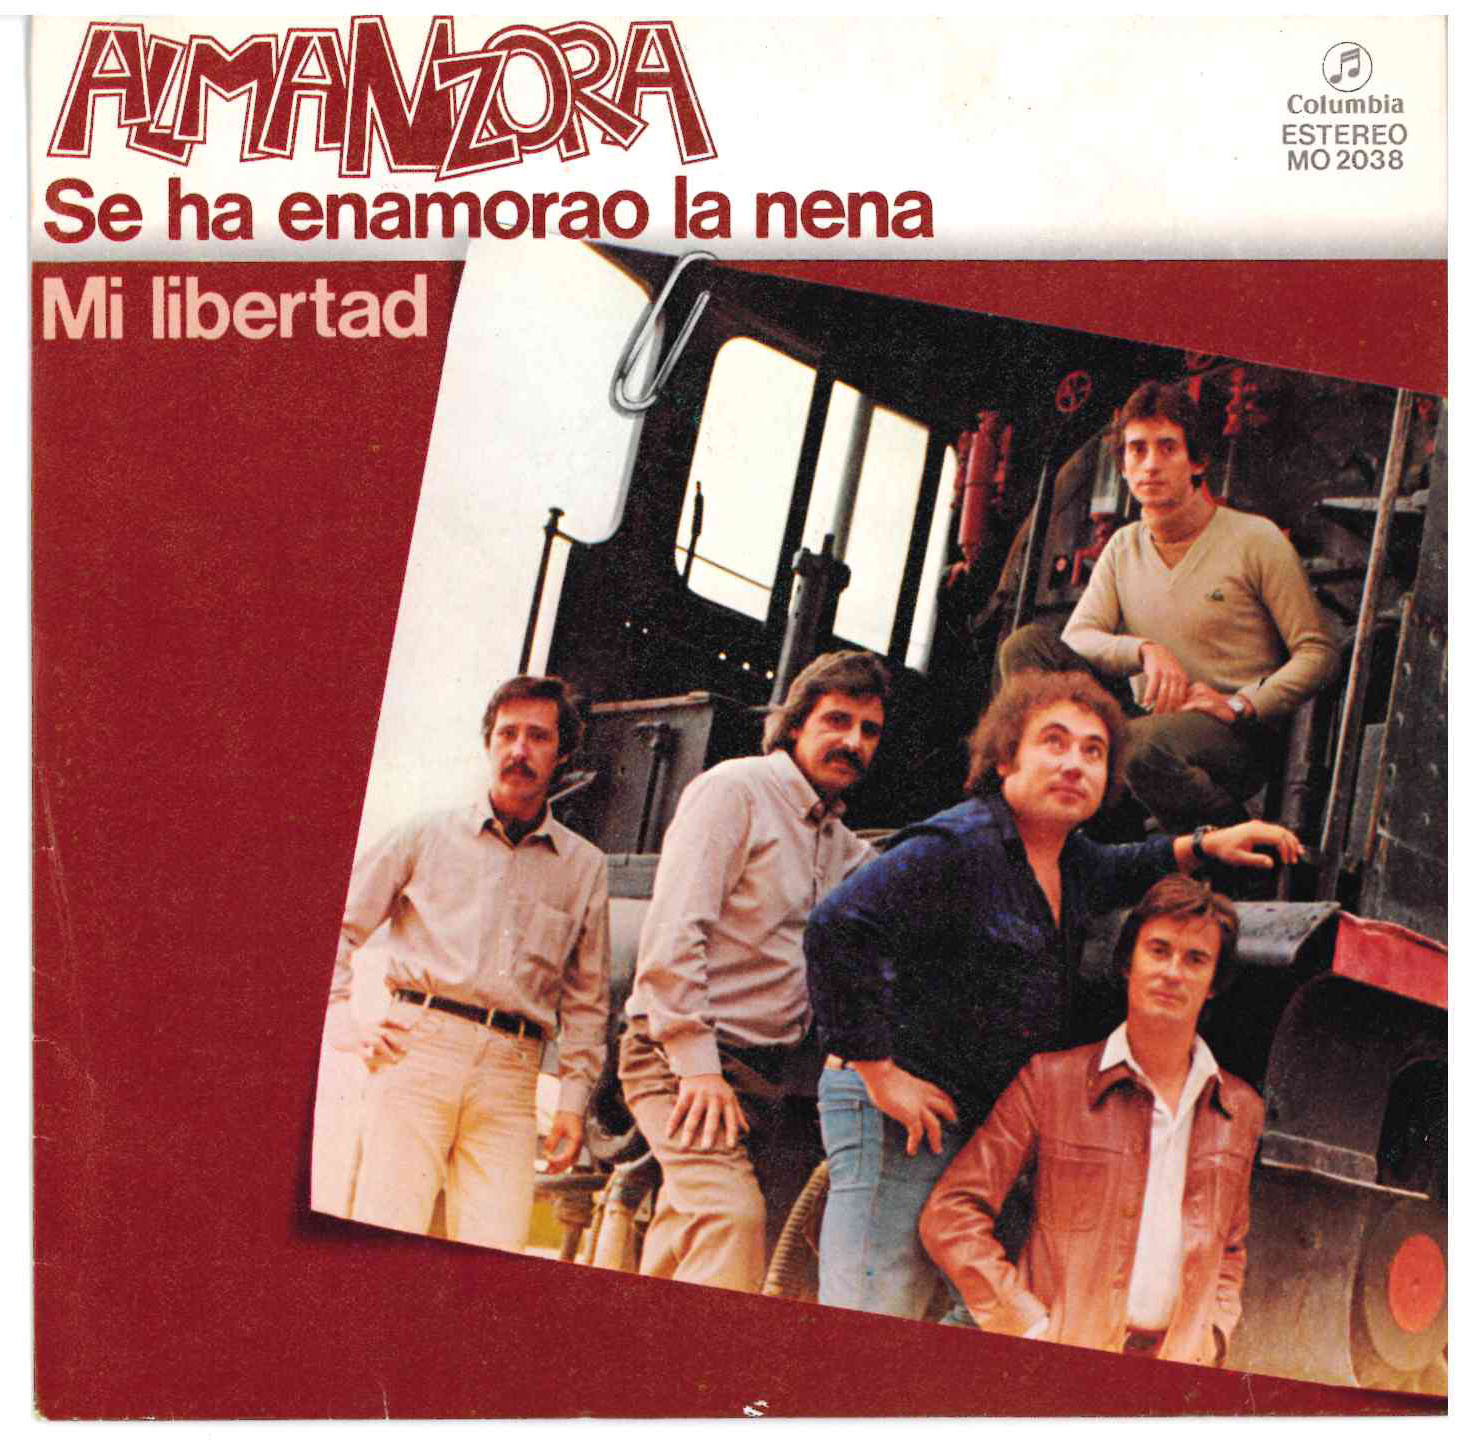 Almanzora. Se ha enamorao la nena / Mi libertad. Columbia 1981 (MO 2038) Single 45 RPM